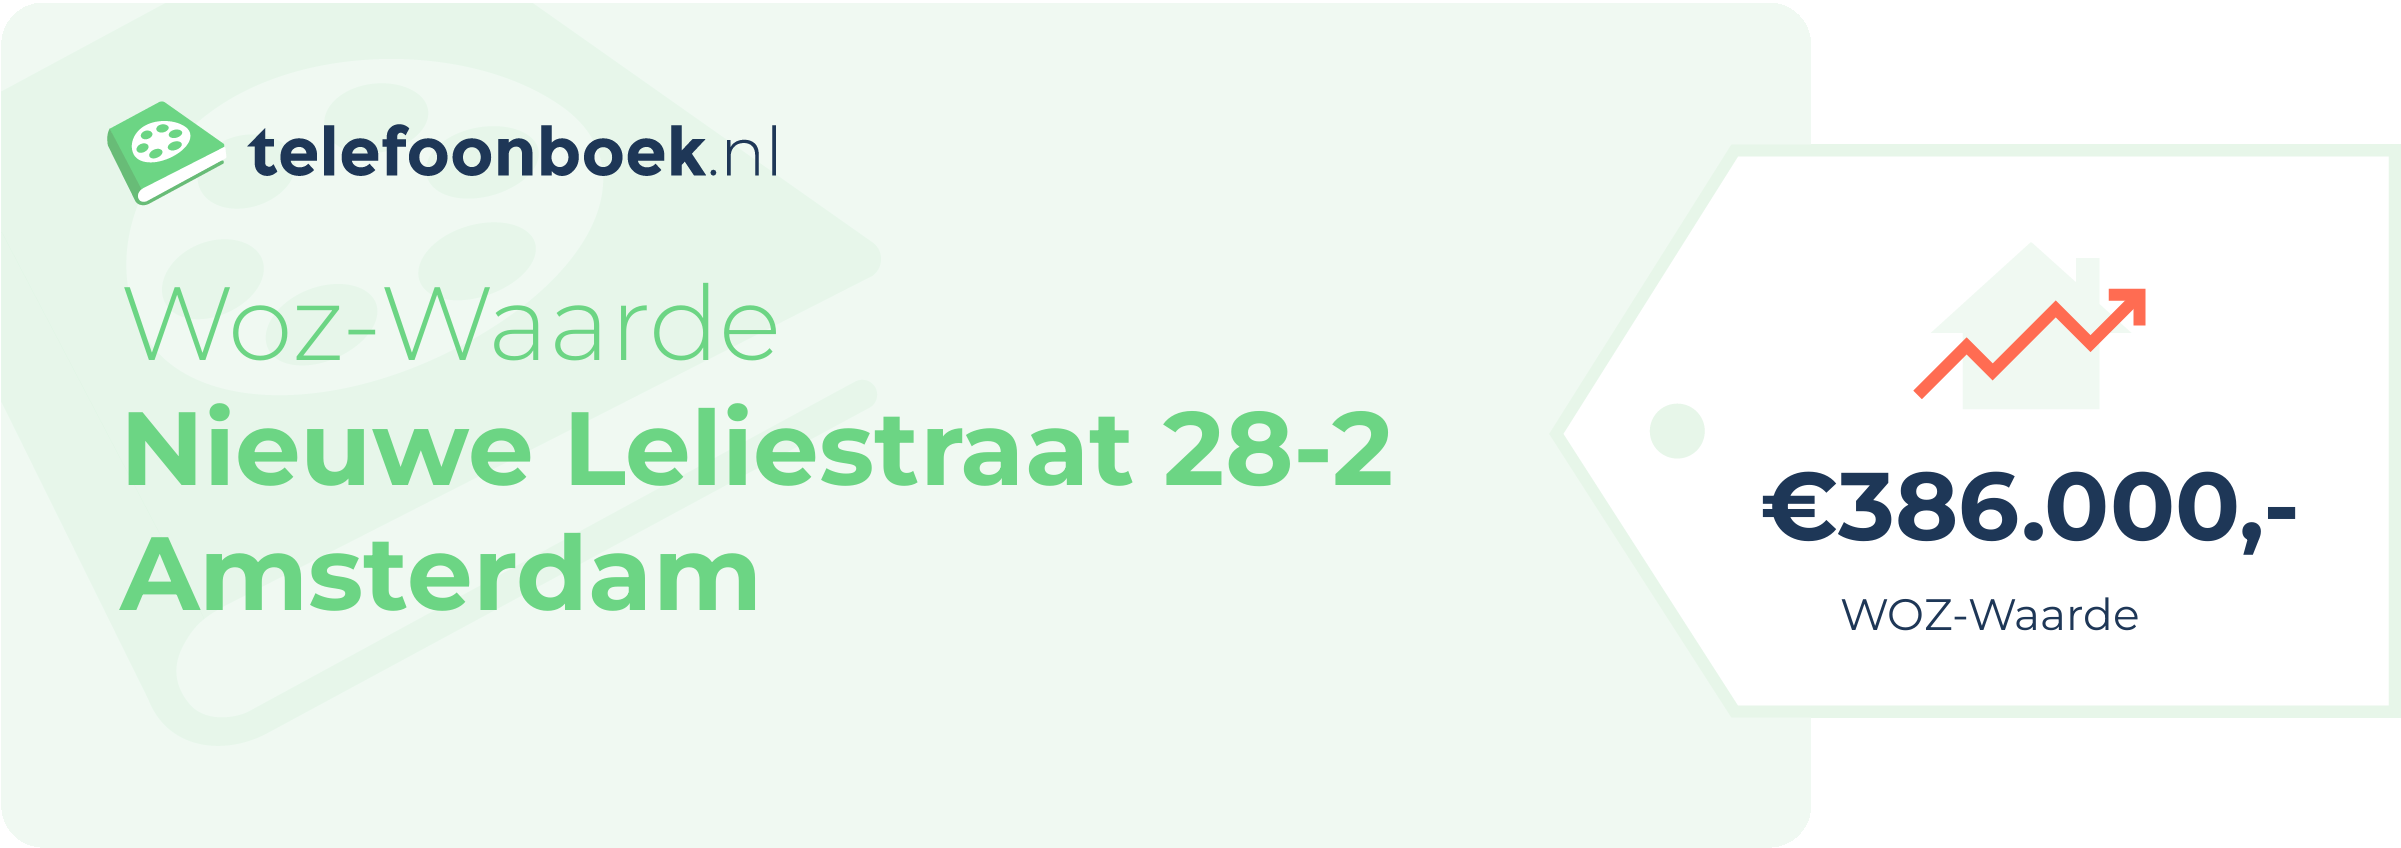 WOZ-waarde Nieuwe Leliestraat 28-2 Amsterdam